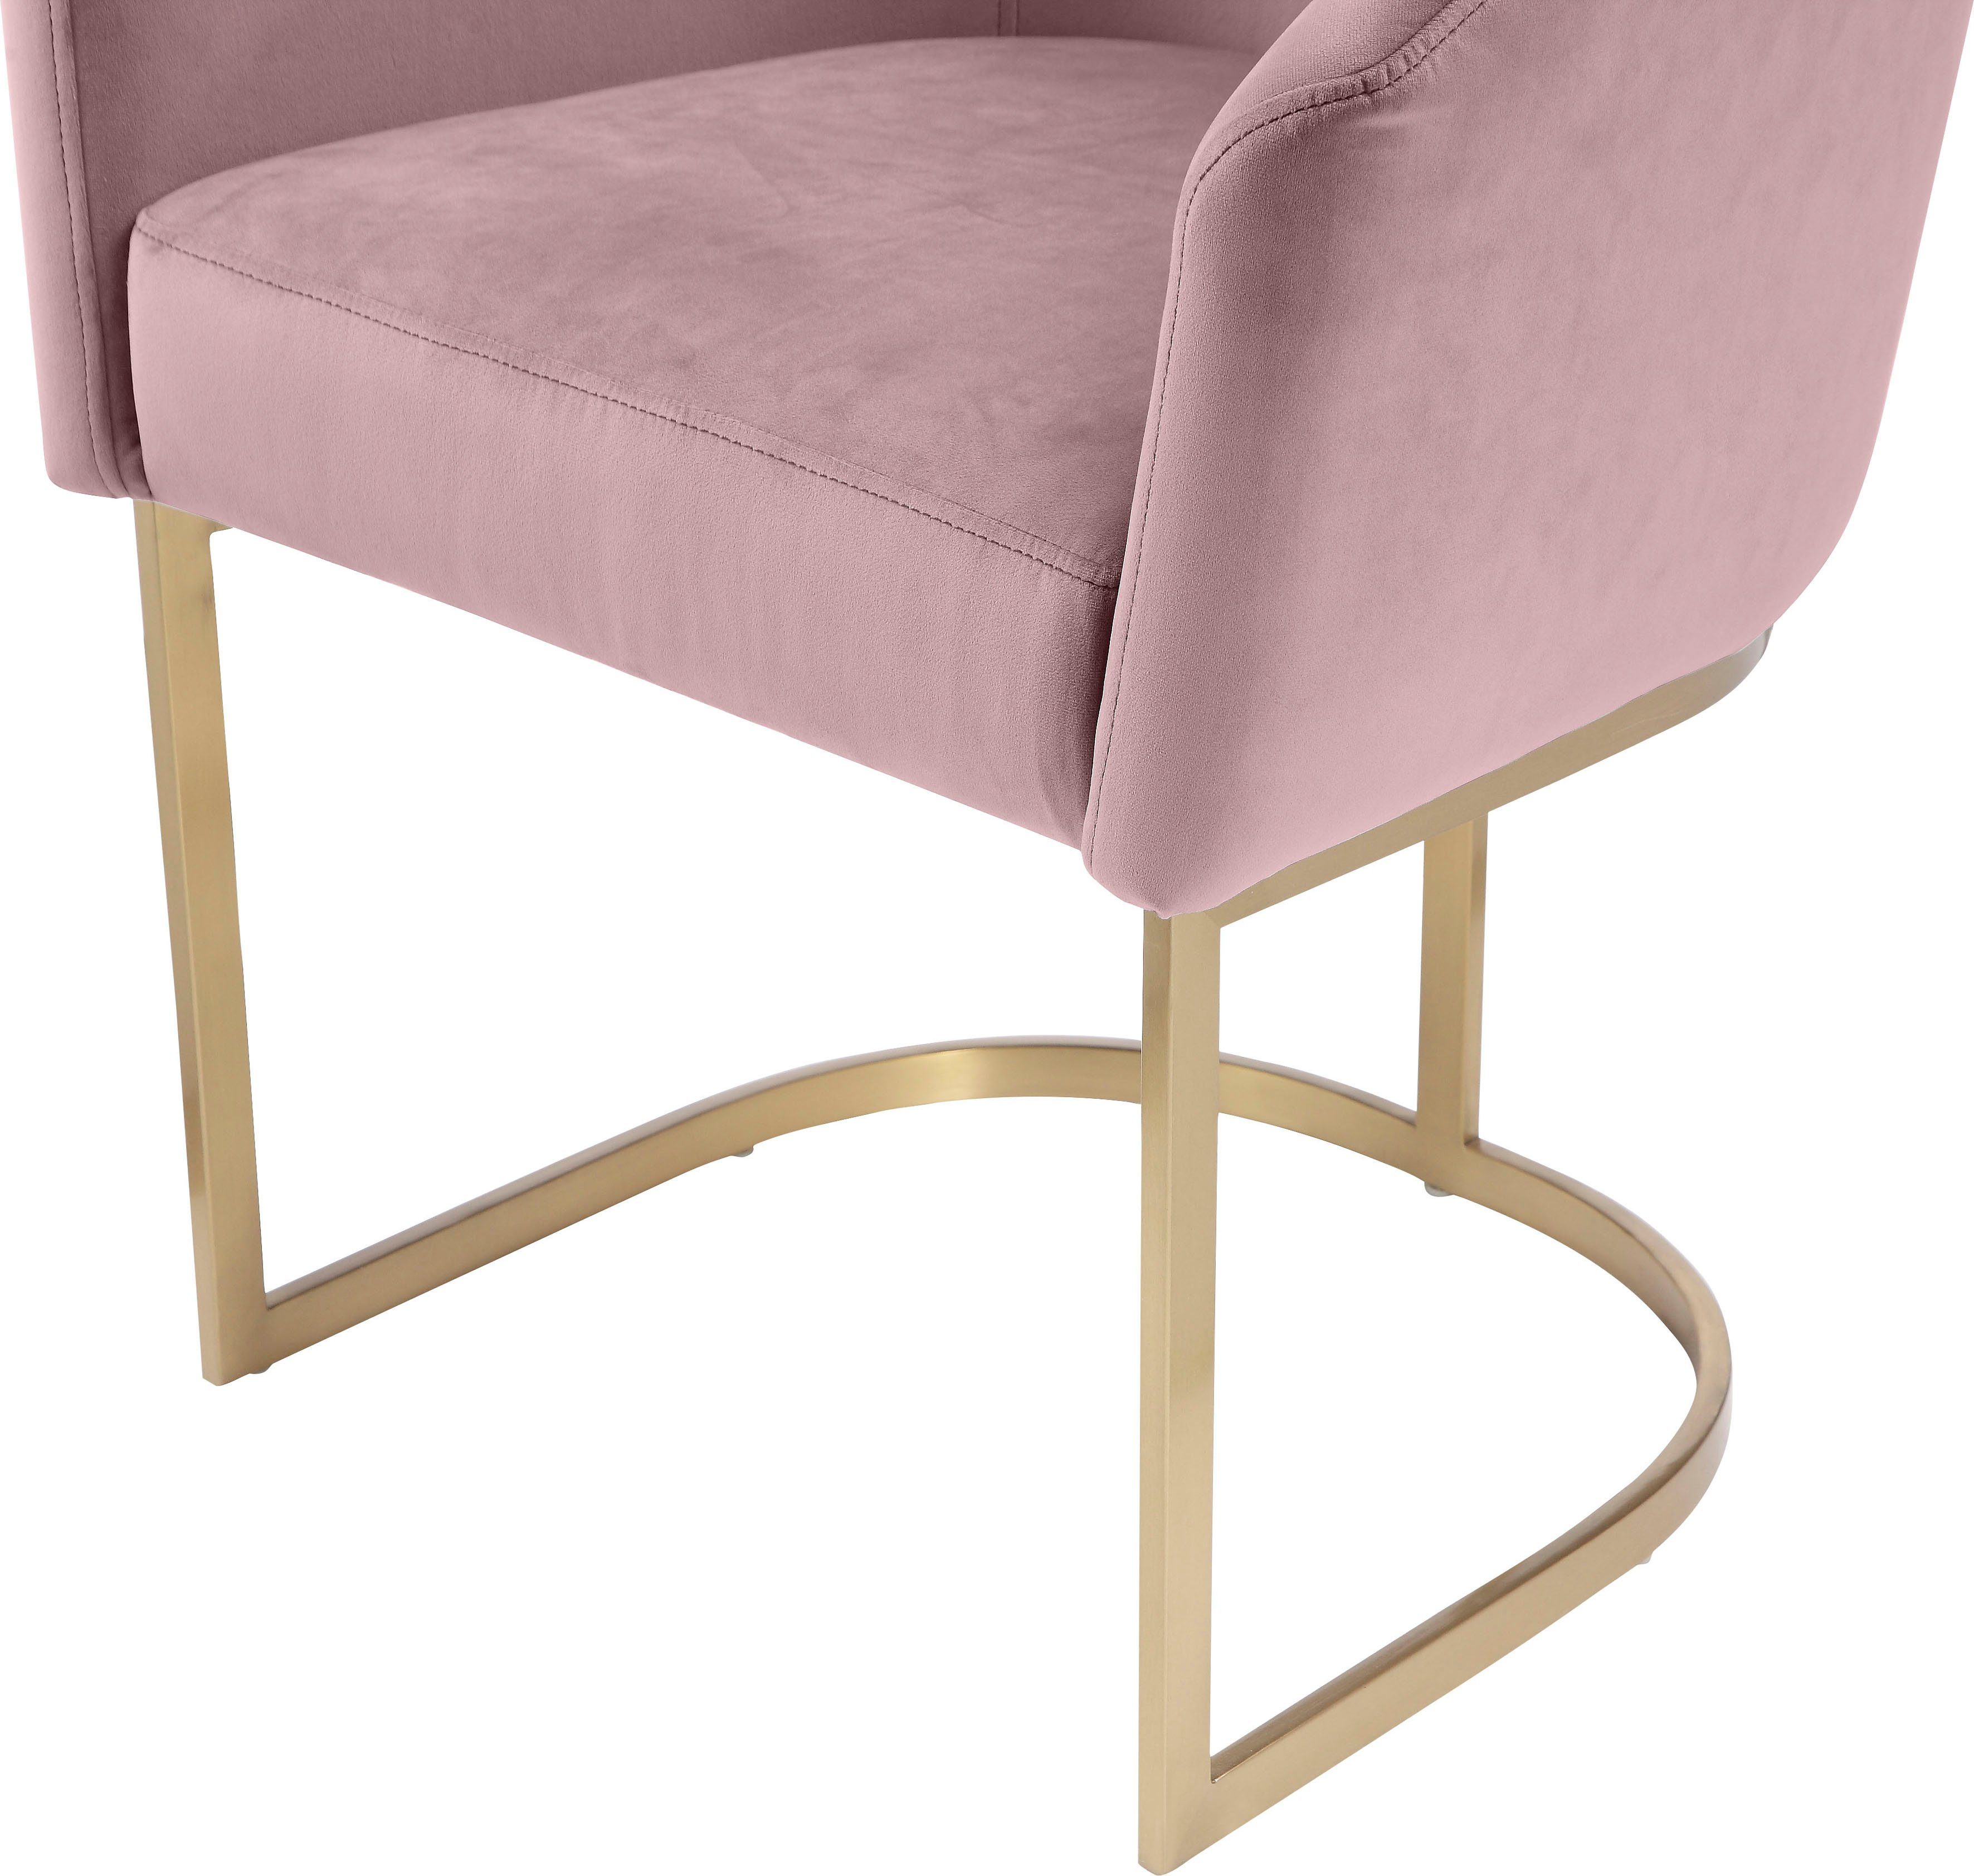 breken ongeduldig karton Leonique Vrijdragende stoel Jolesee In 2 kwaliteiten te bestellen, frame  van edelstaal snel online gekocht | OTTO